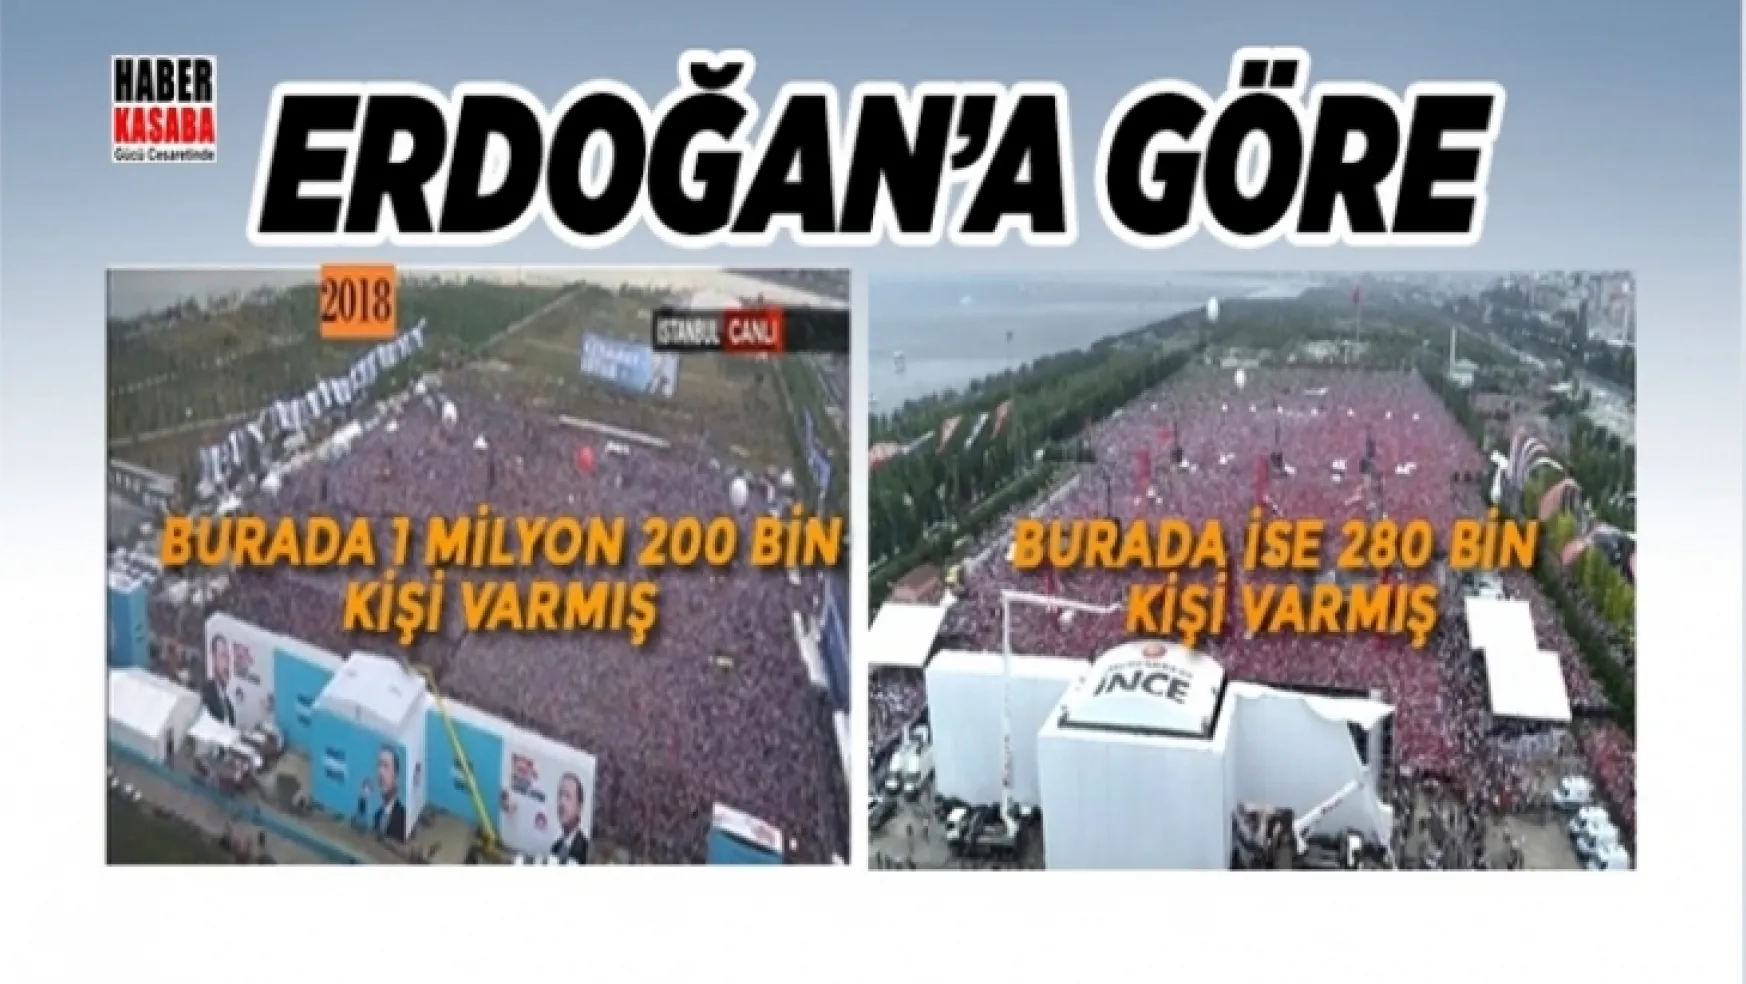 İnce'nin Maltepe mitinginde Erdoğan'a göre 280 bin kişi var